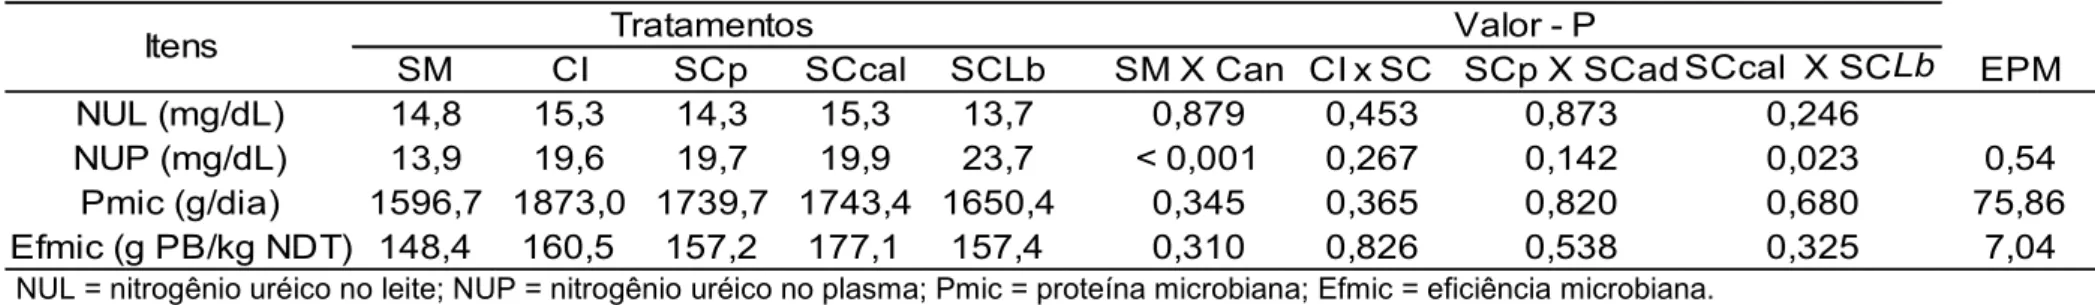 Tabela  7  –  Médias  para  a  concentração  de  nitrogênio  uréico  no  leite  (NUF),  no  plasma  (NUP),  síntese  de  proteína  microbiana  (Pmic) e eficiência microbiana (Efmic) em função das dietas experimentais